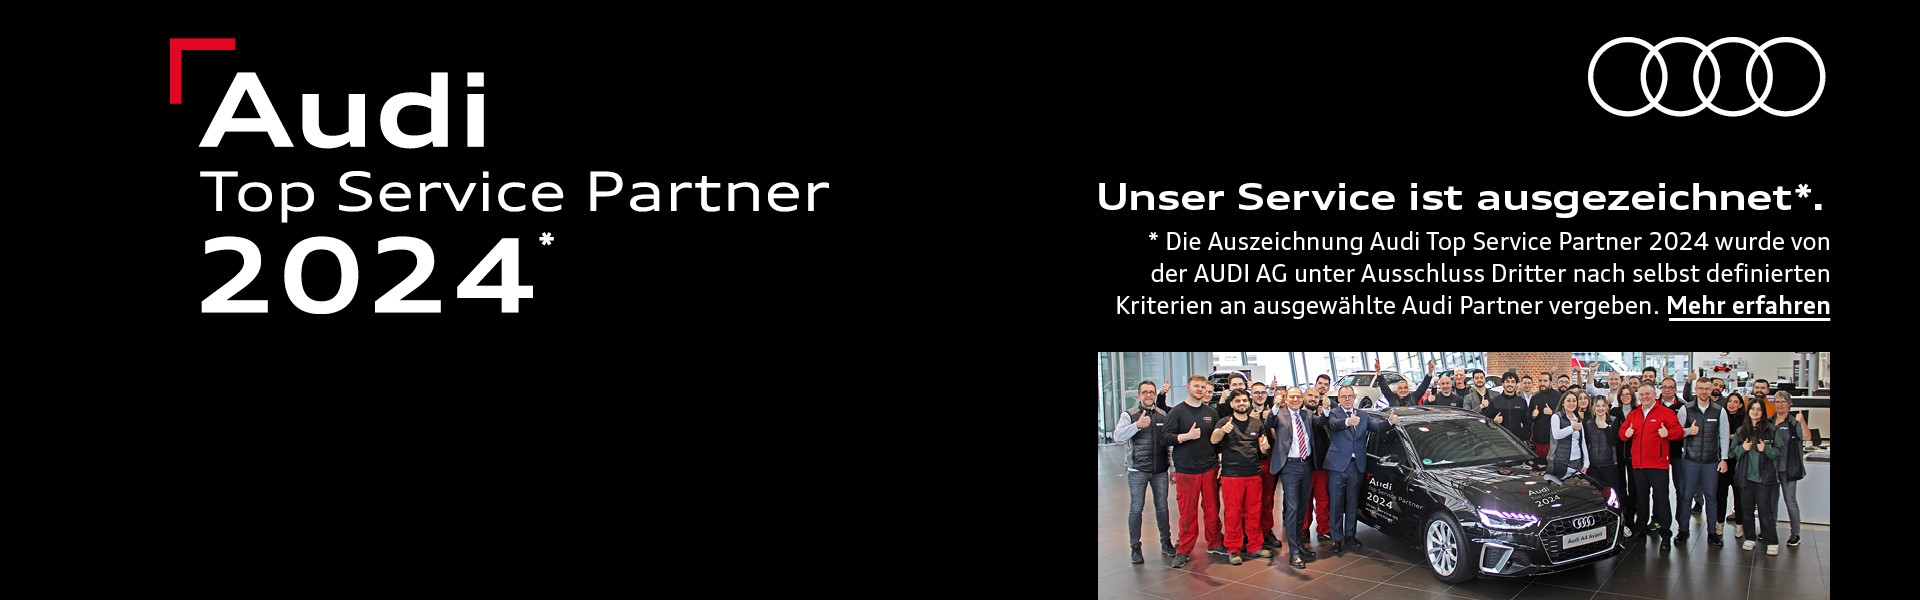 Borgmann im Schirrhof ist Audi Top Service Partner 2024